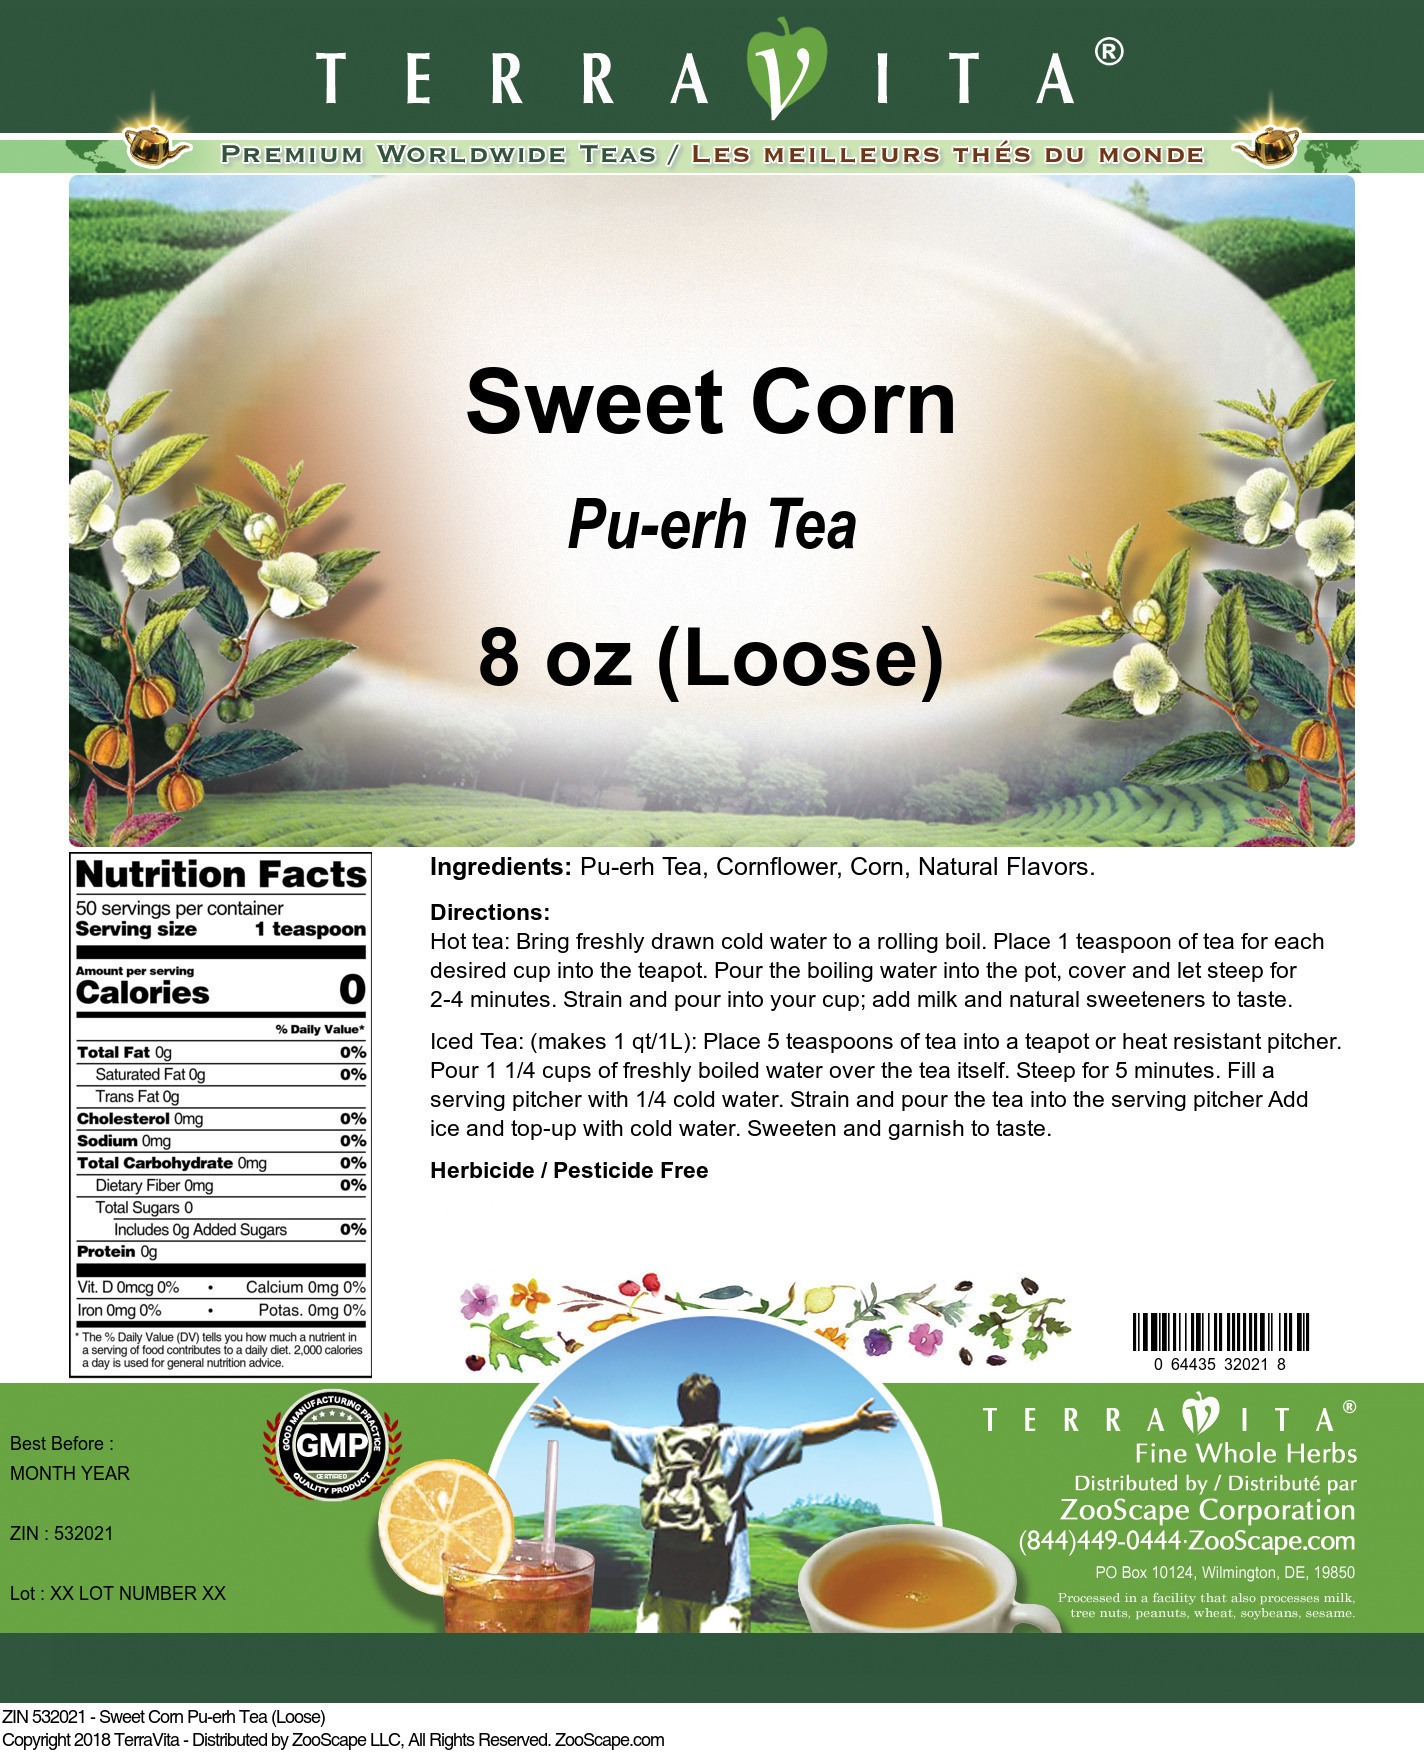 Sweet Corn Pu-erh Tea (Loose) - Label